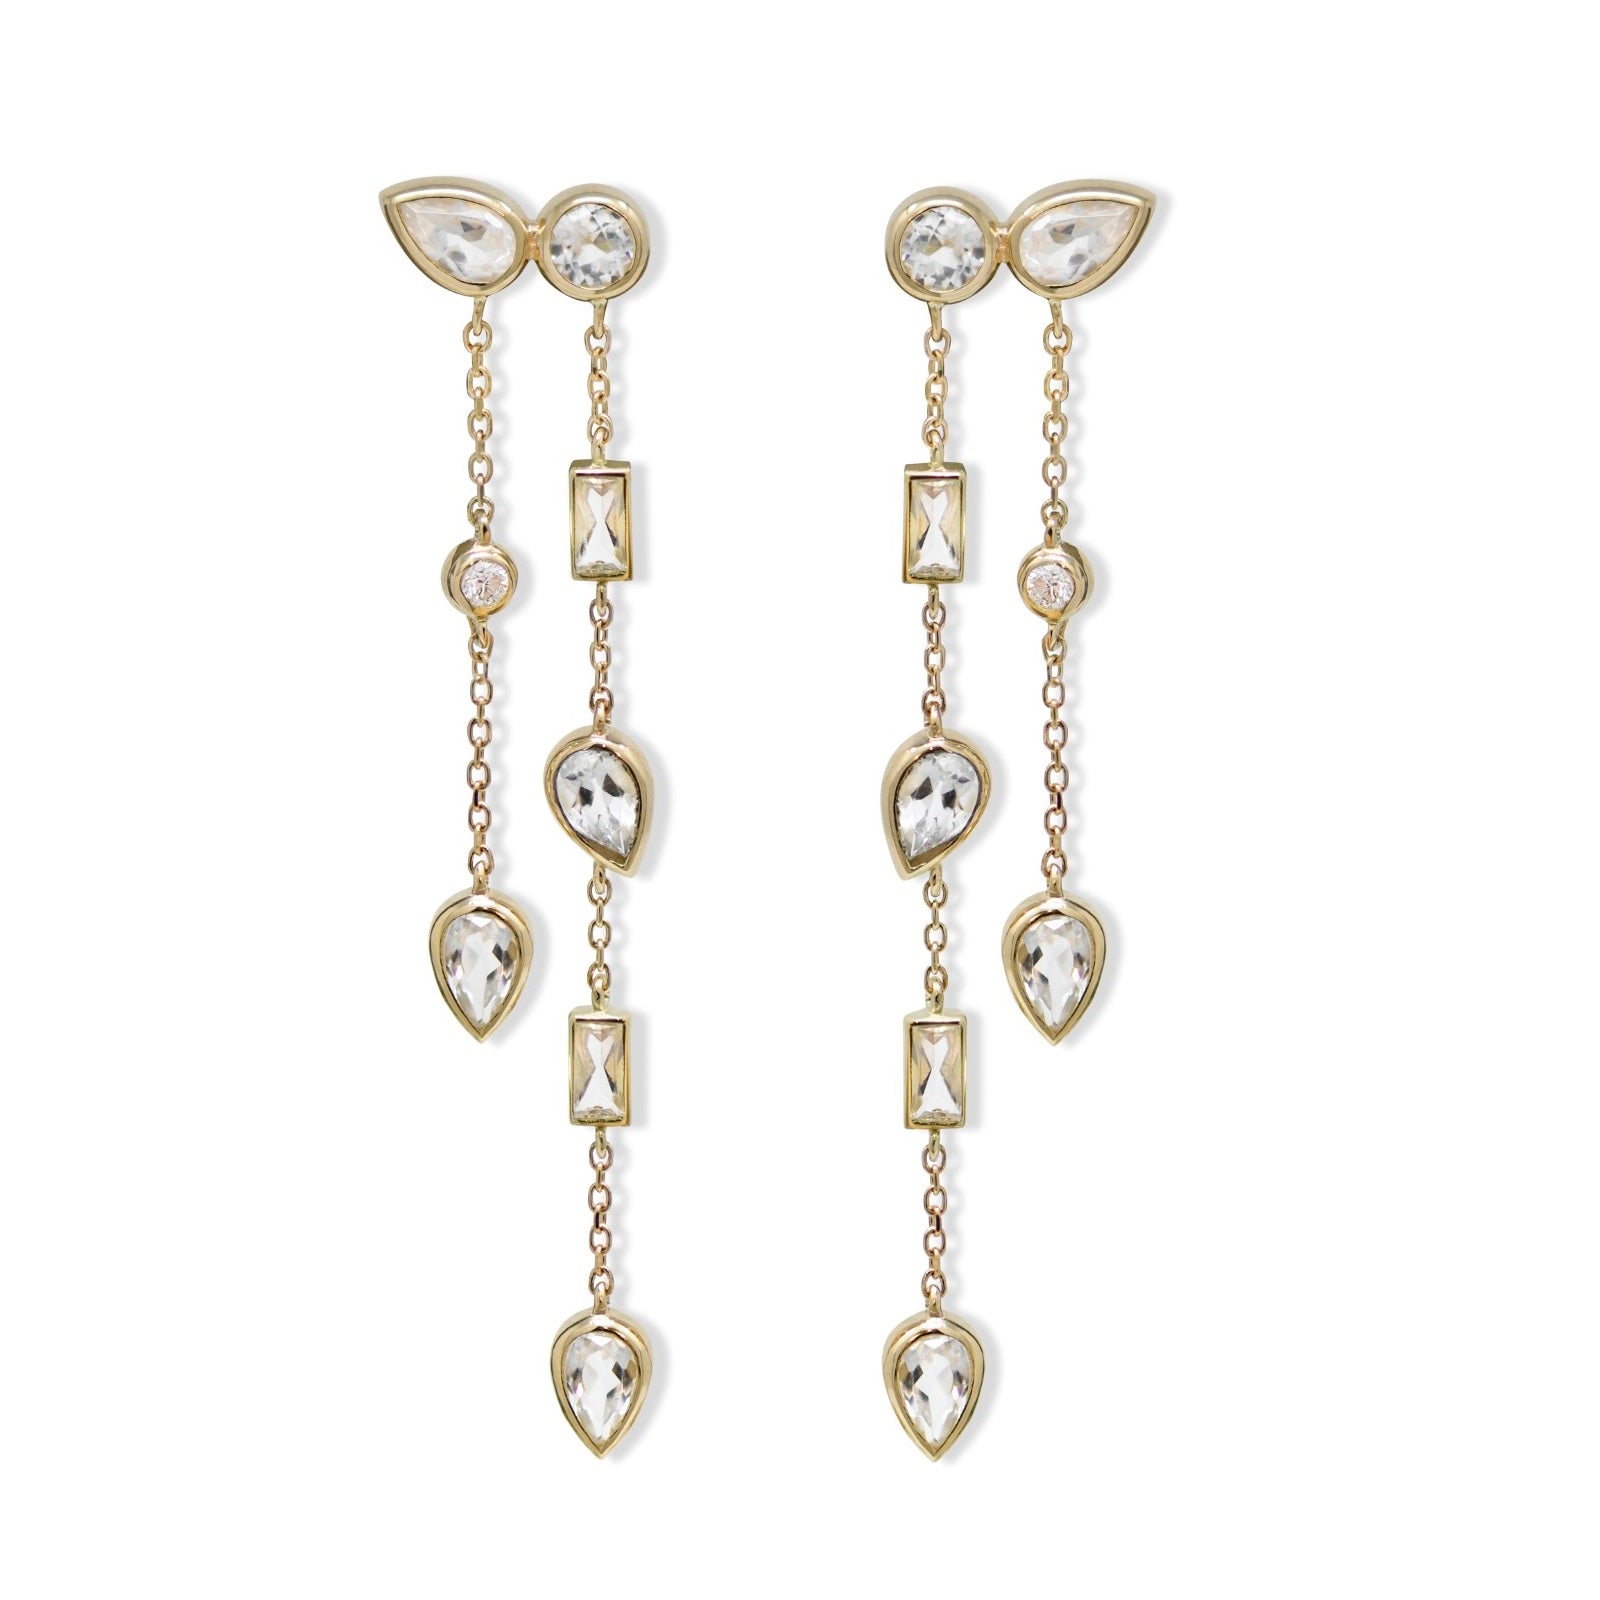 14K Yellow Gold Cleo Liana Double Chain Chandelier Topaz & Diamond Earrings